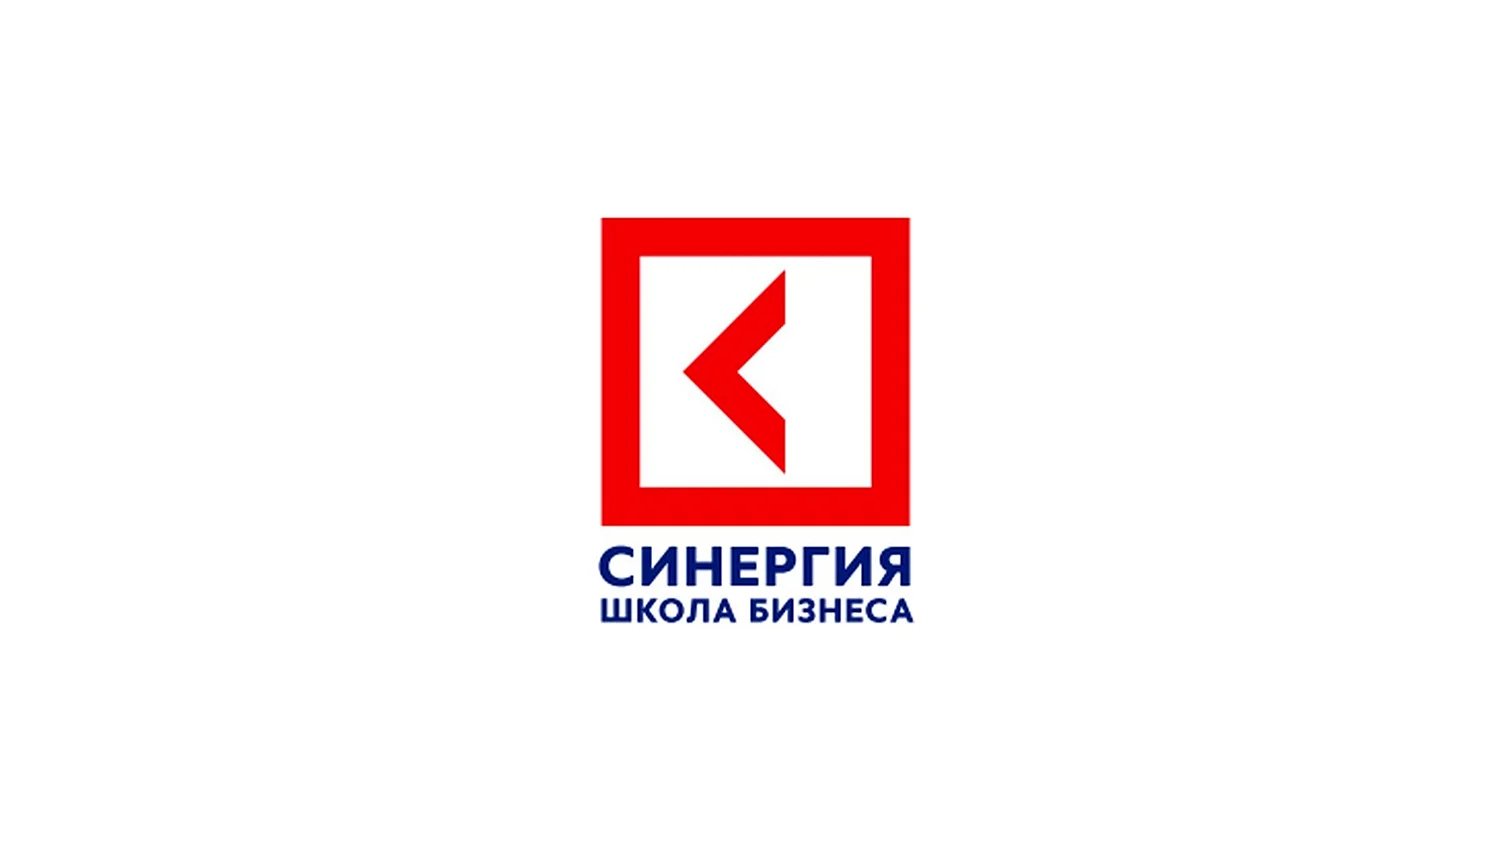 СИНЕРГИЯ школа бизнеса лого